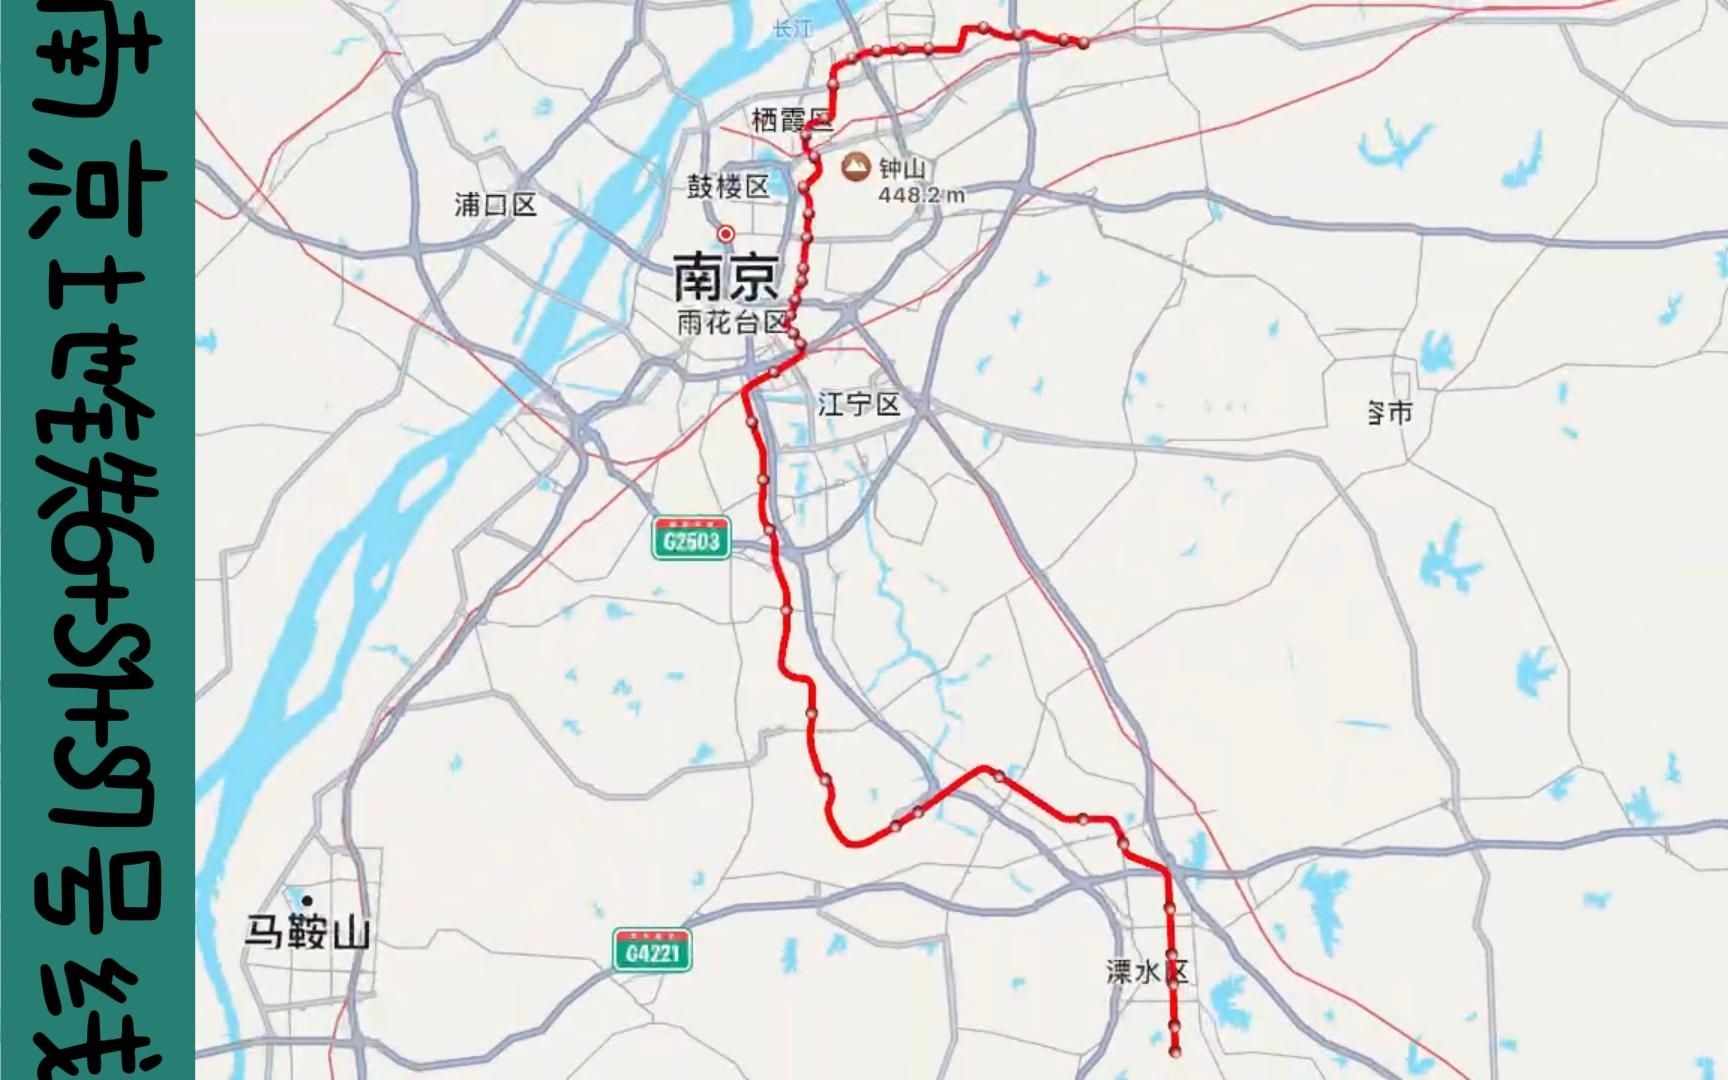 南京市s7地铁线路图图片